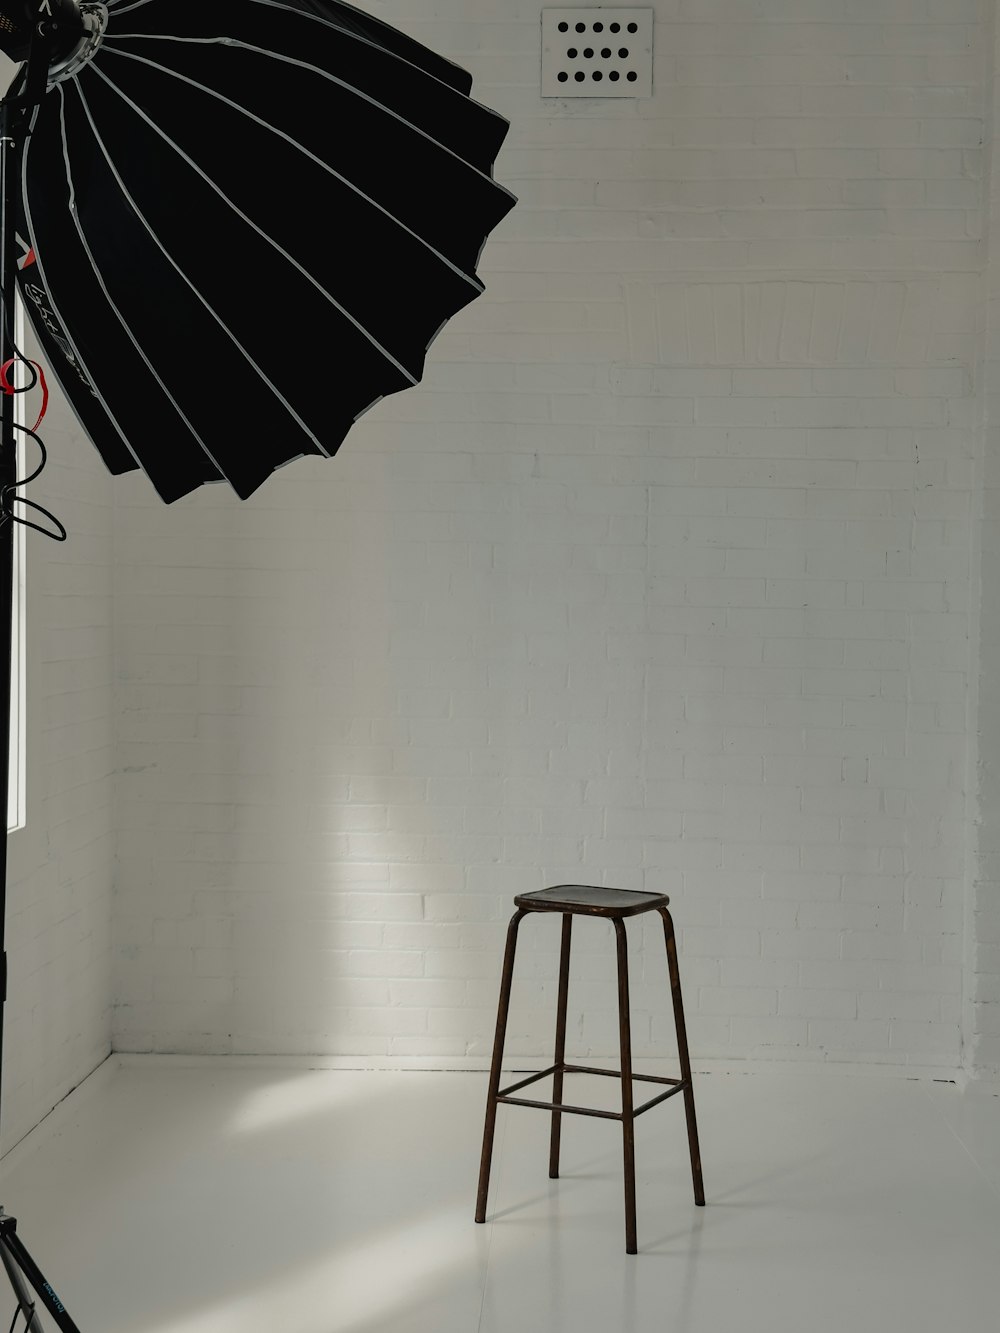 a stool and umbrella